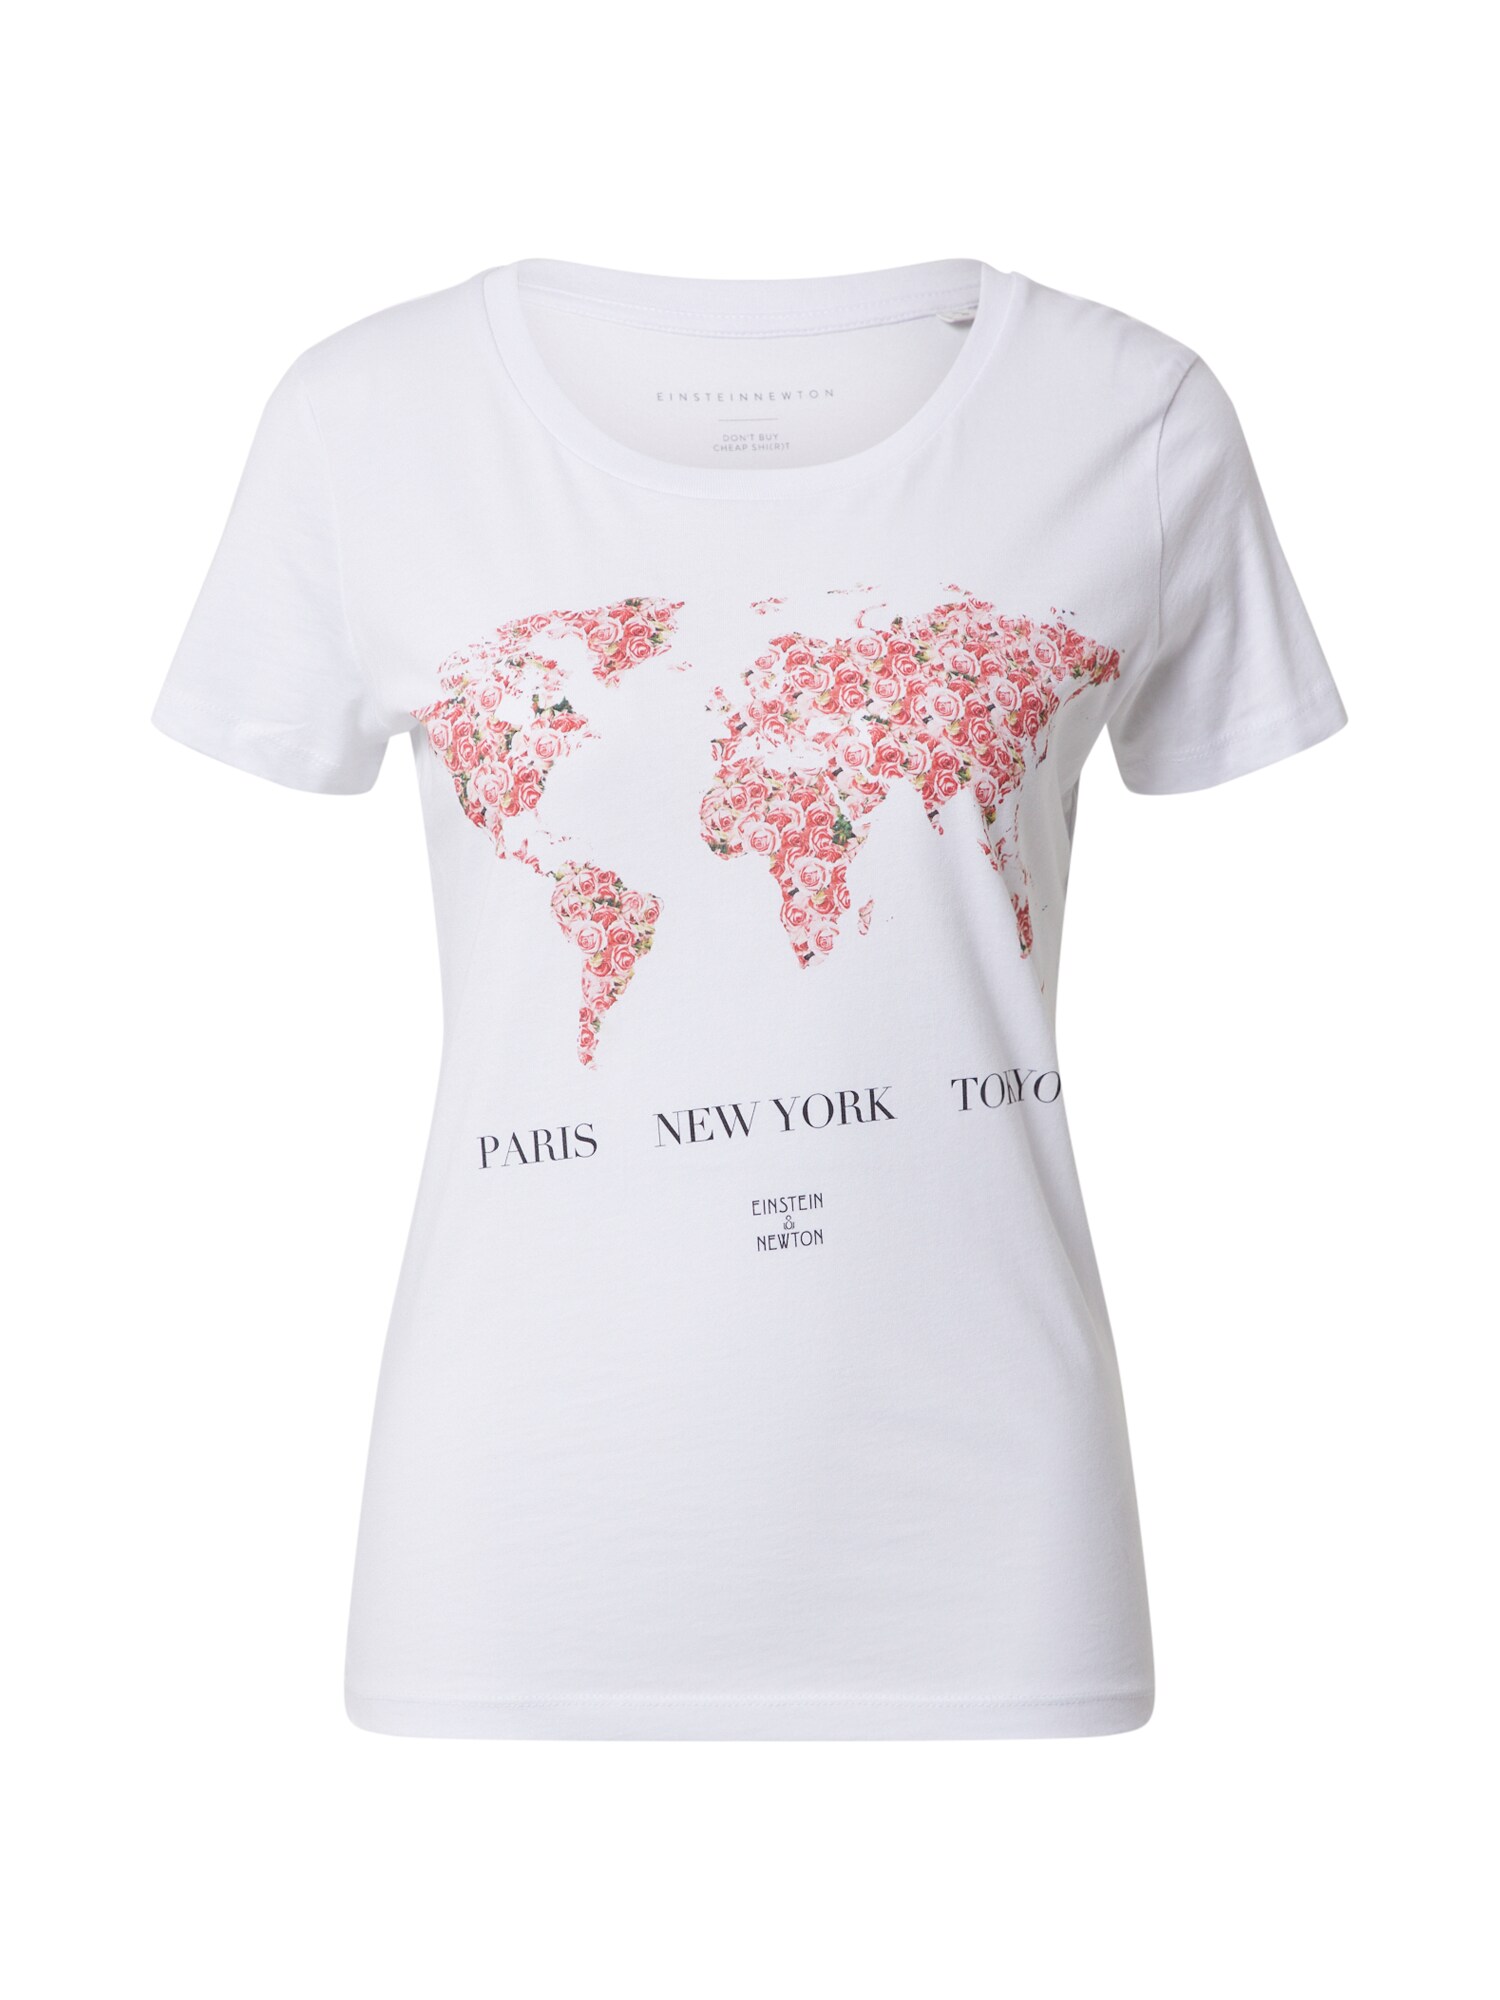 EINSTEIN & NEWTON Marškinėliai 'World'  rožių spalva / juoda / balta